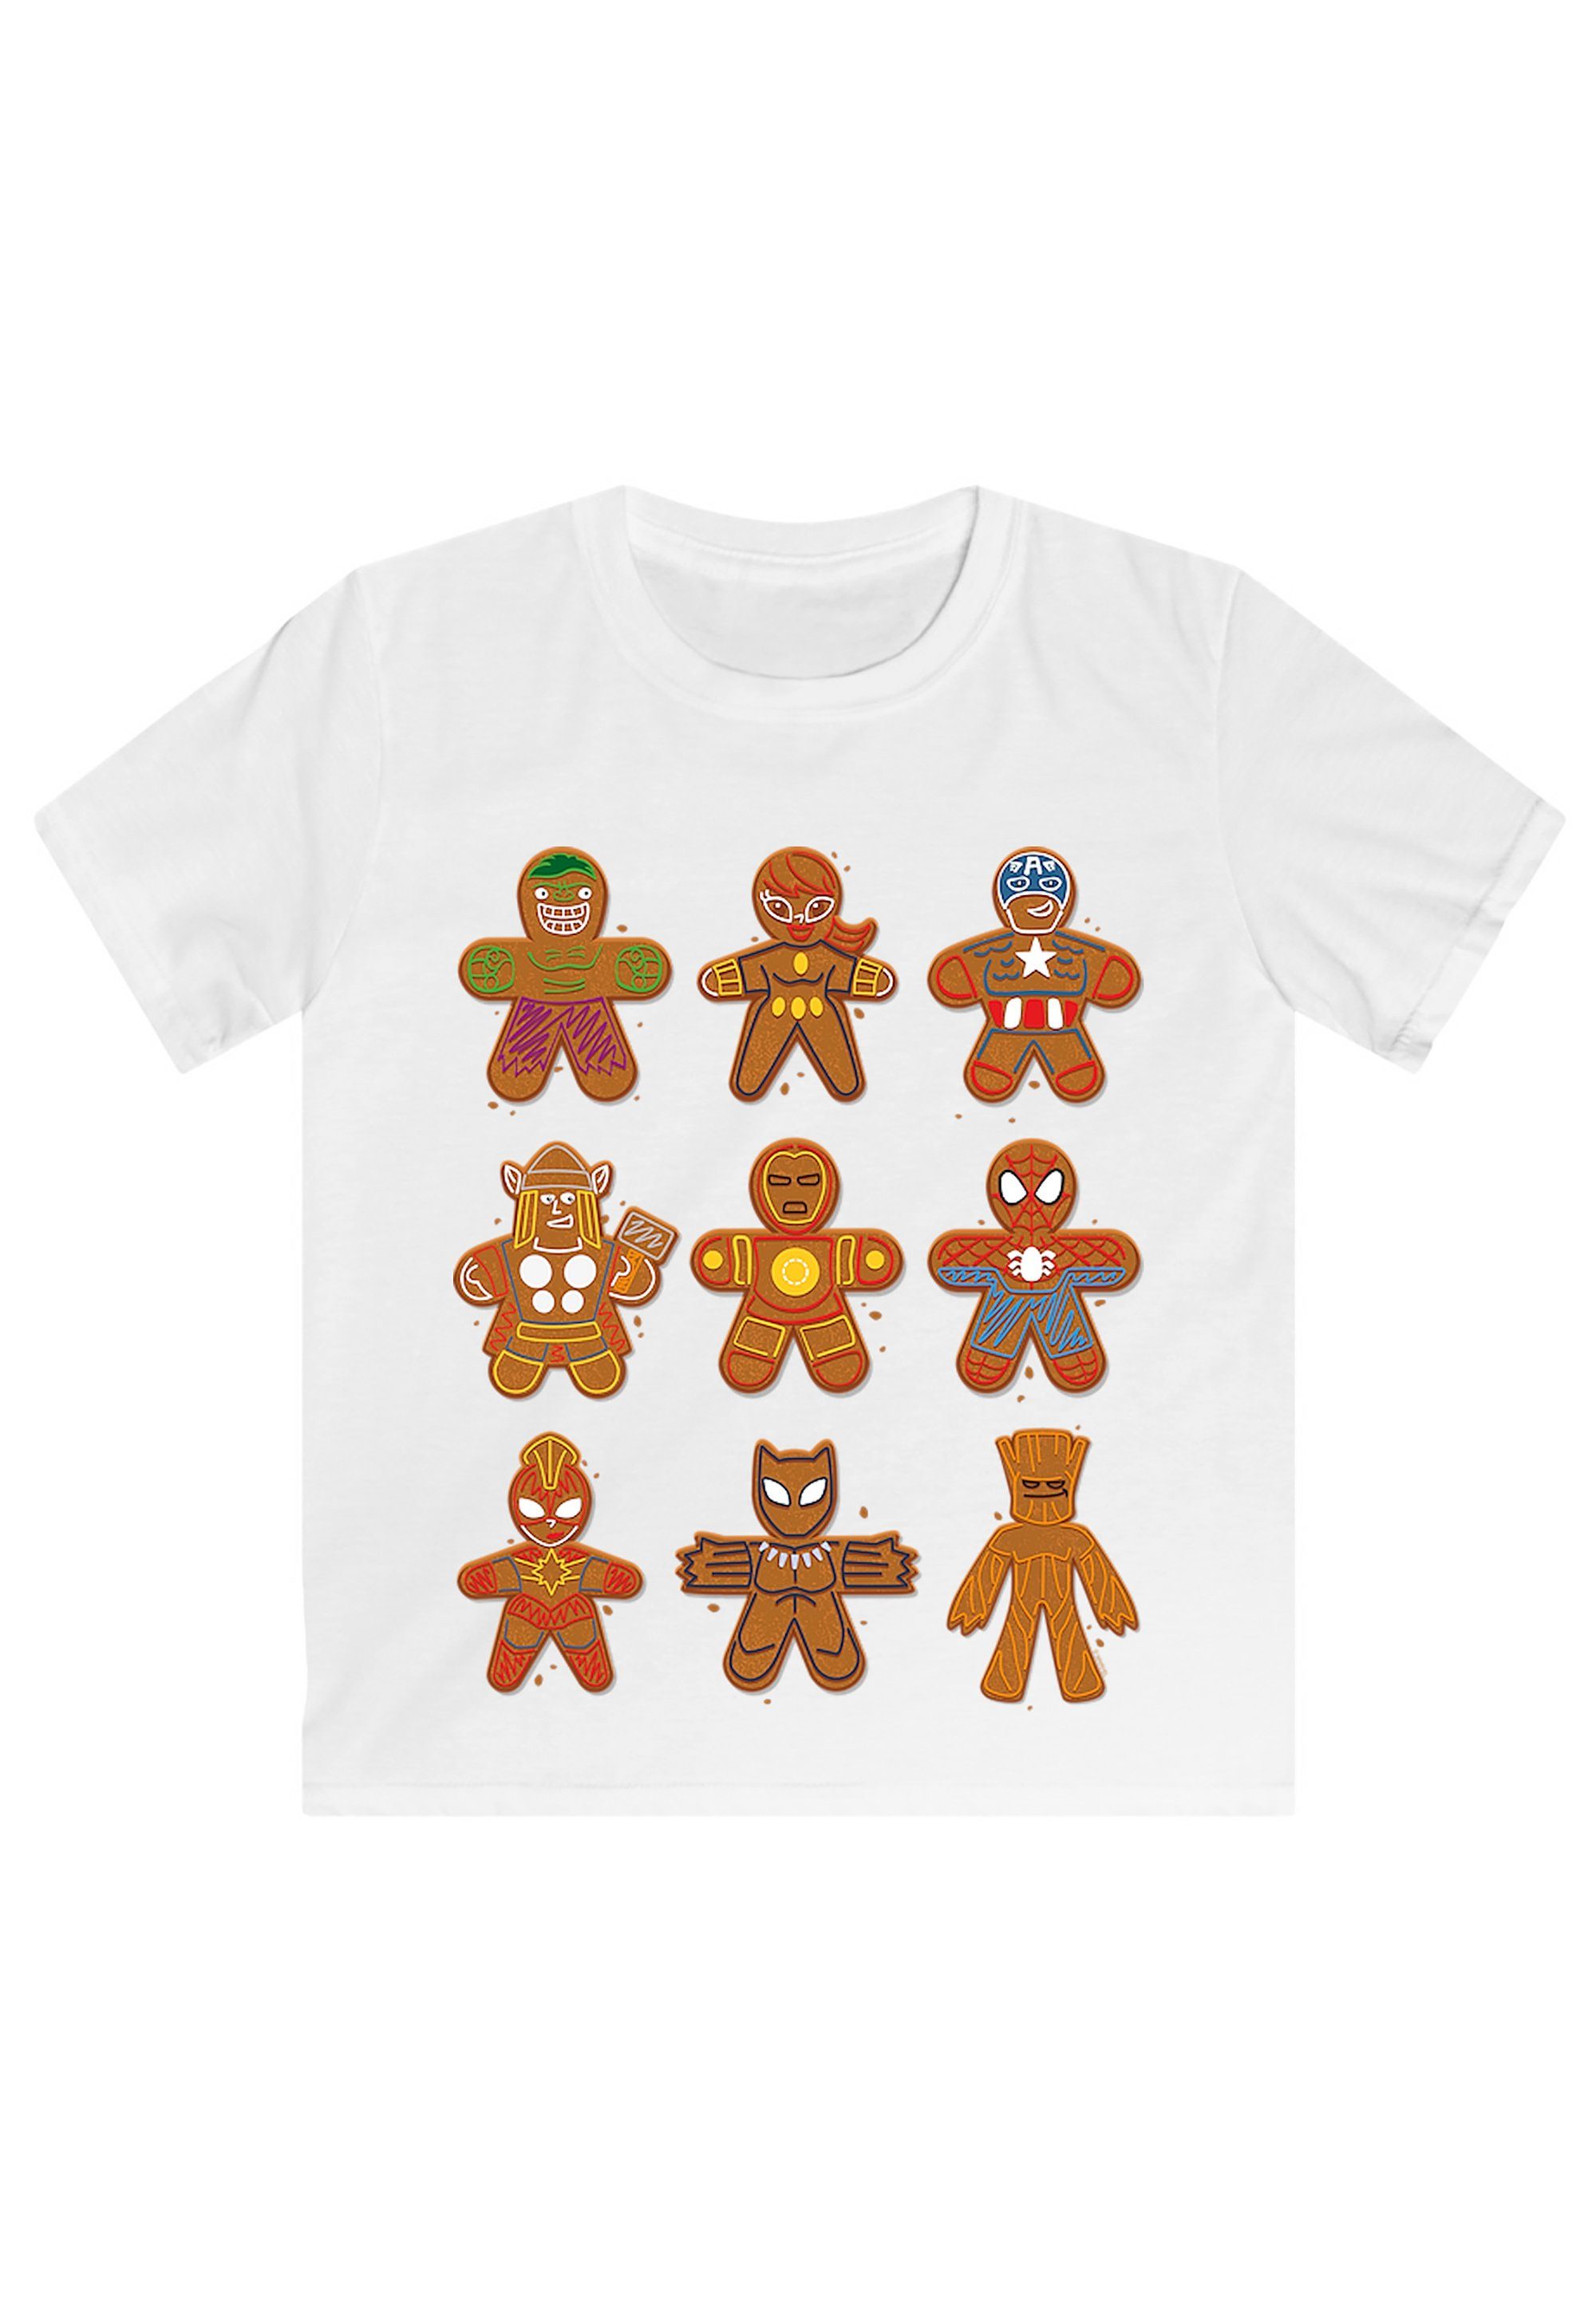 T-Shirt weiß Weihnachten Fan Universe F4NT4STIC Print Lebkuchen Merch Marvel Avengers